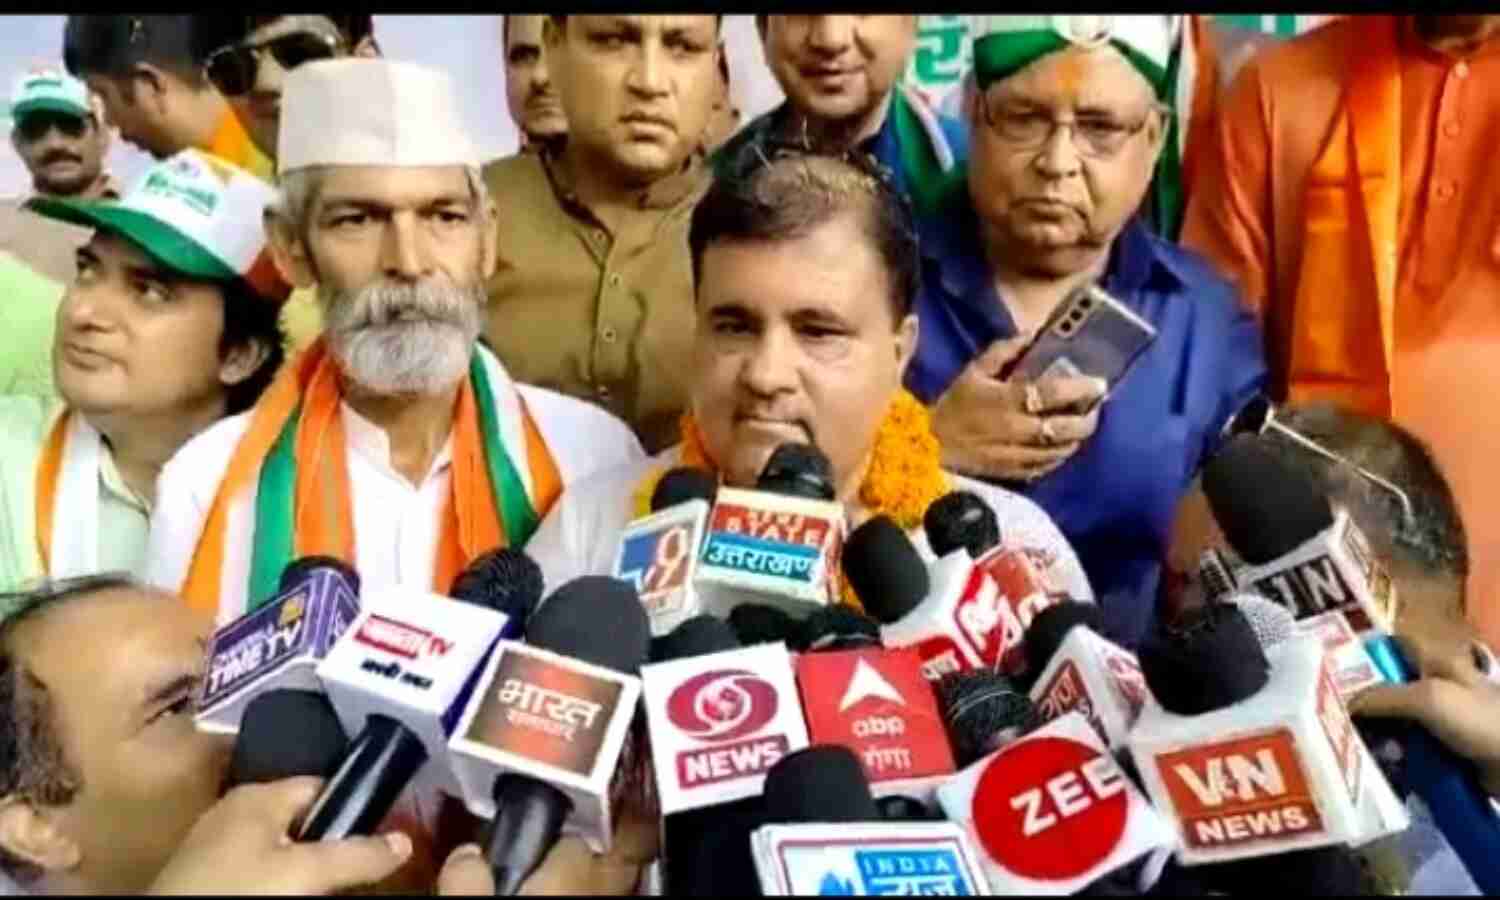 Uttarakhand News : भाजपा अध्यक्ष महेंद्र भट्ट के खिलाफ कांग्रेस की तहरीर, हर घर तिरंगे को लेकर दिए बयान पर मचा बवाल